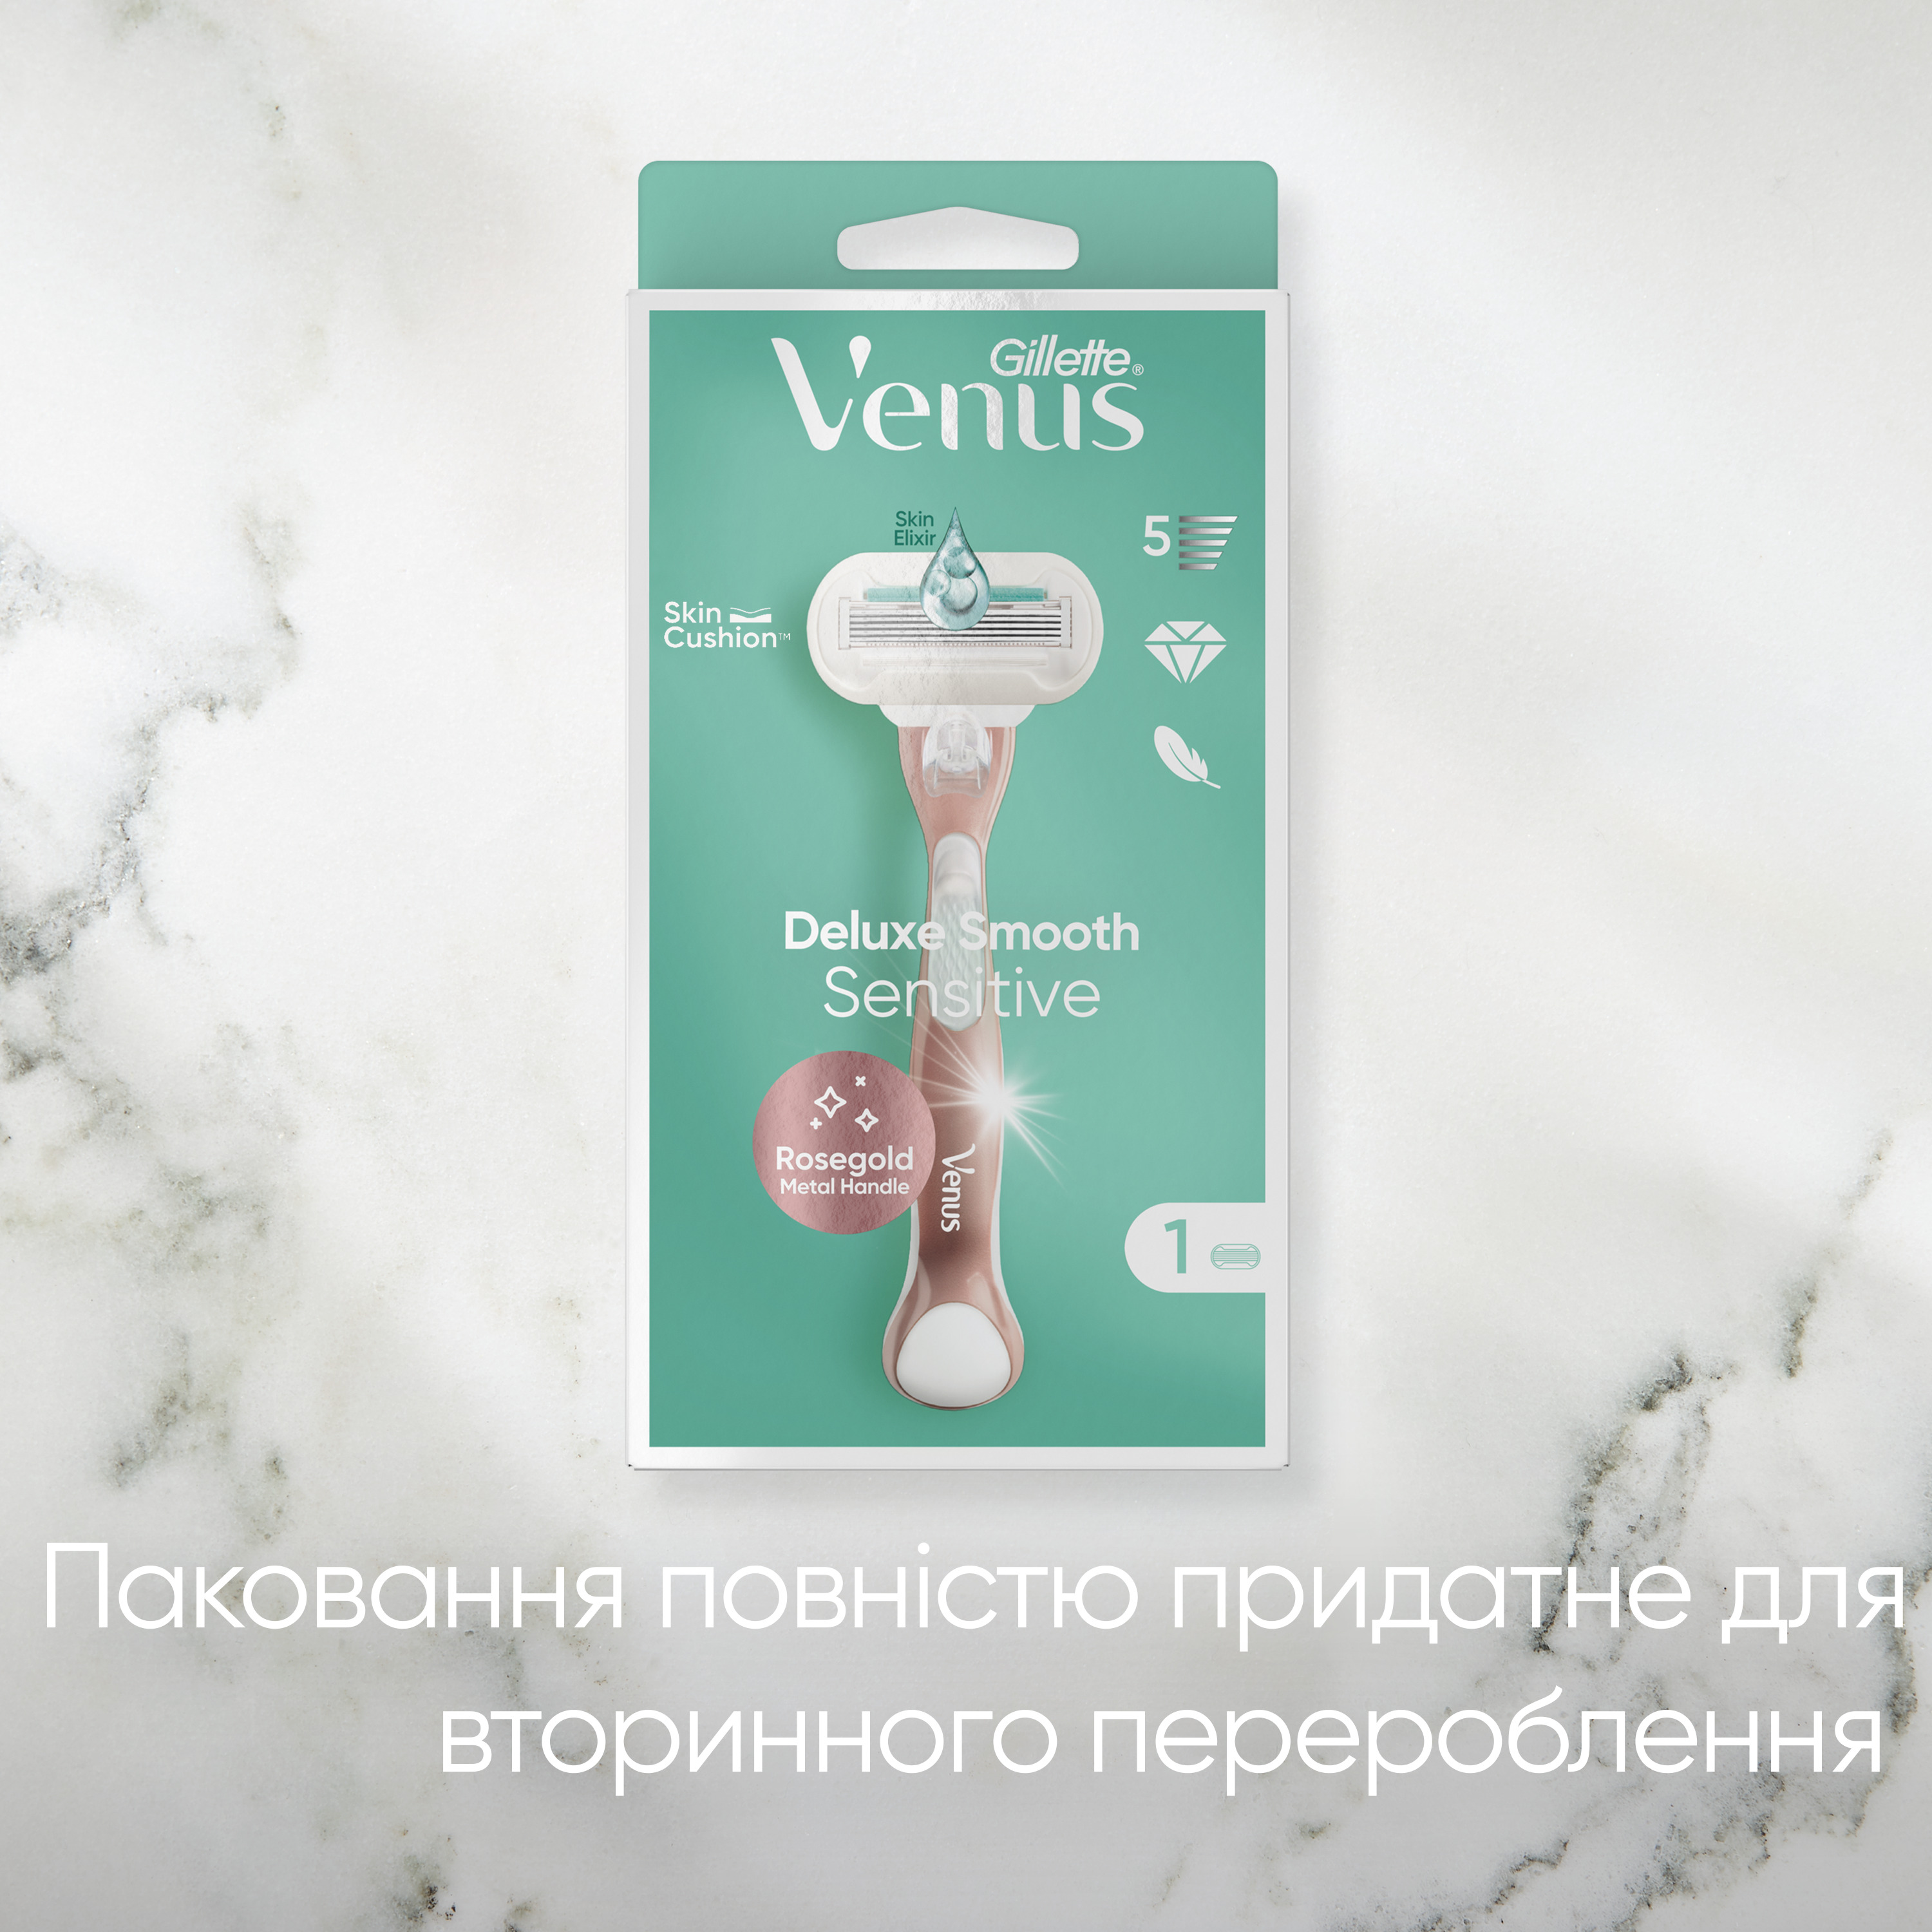 Станок для бритья Gillette Venus Extra Smooth Sensitive RoseGold, с 1 сменным картриджем - фото 8